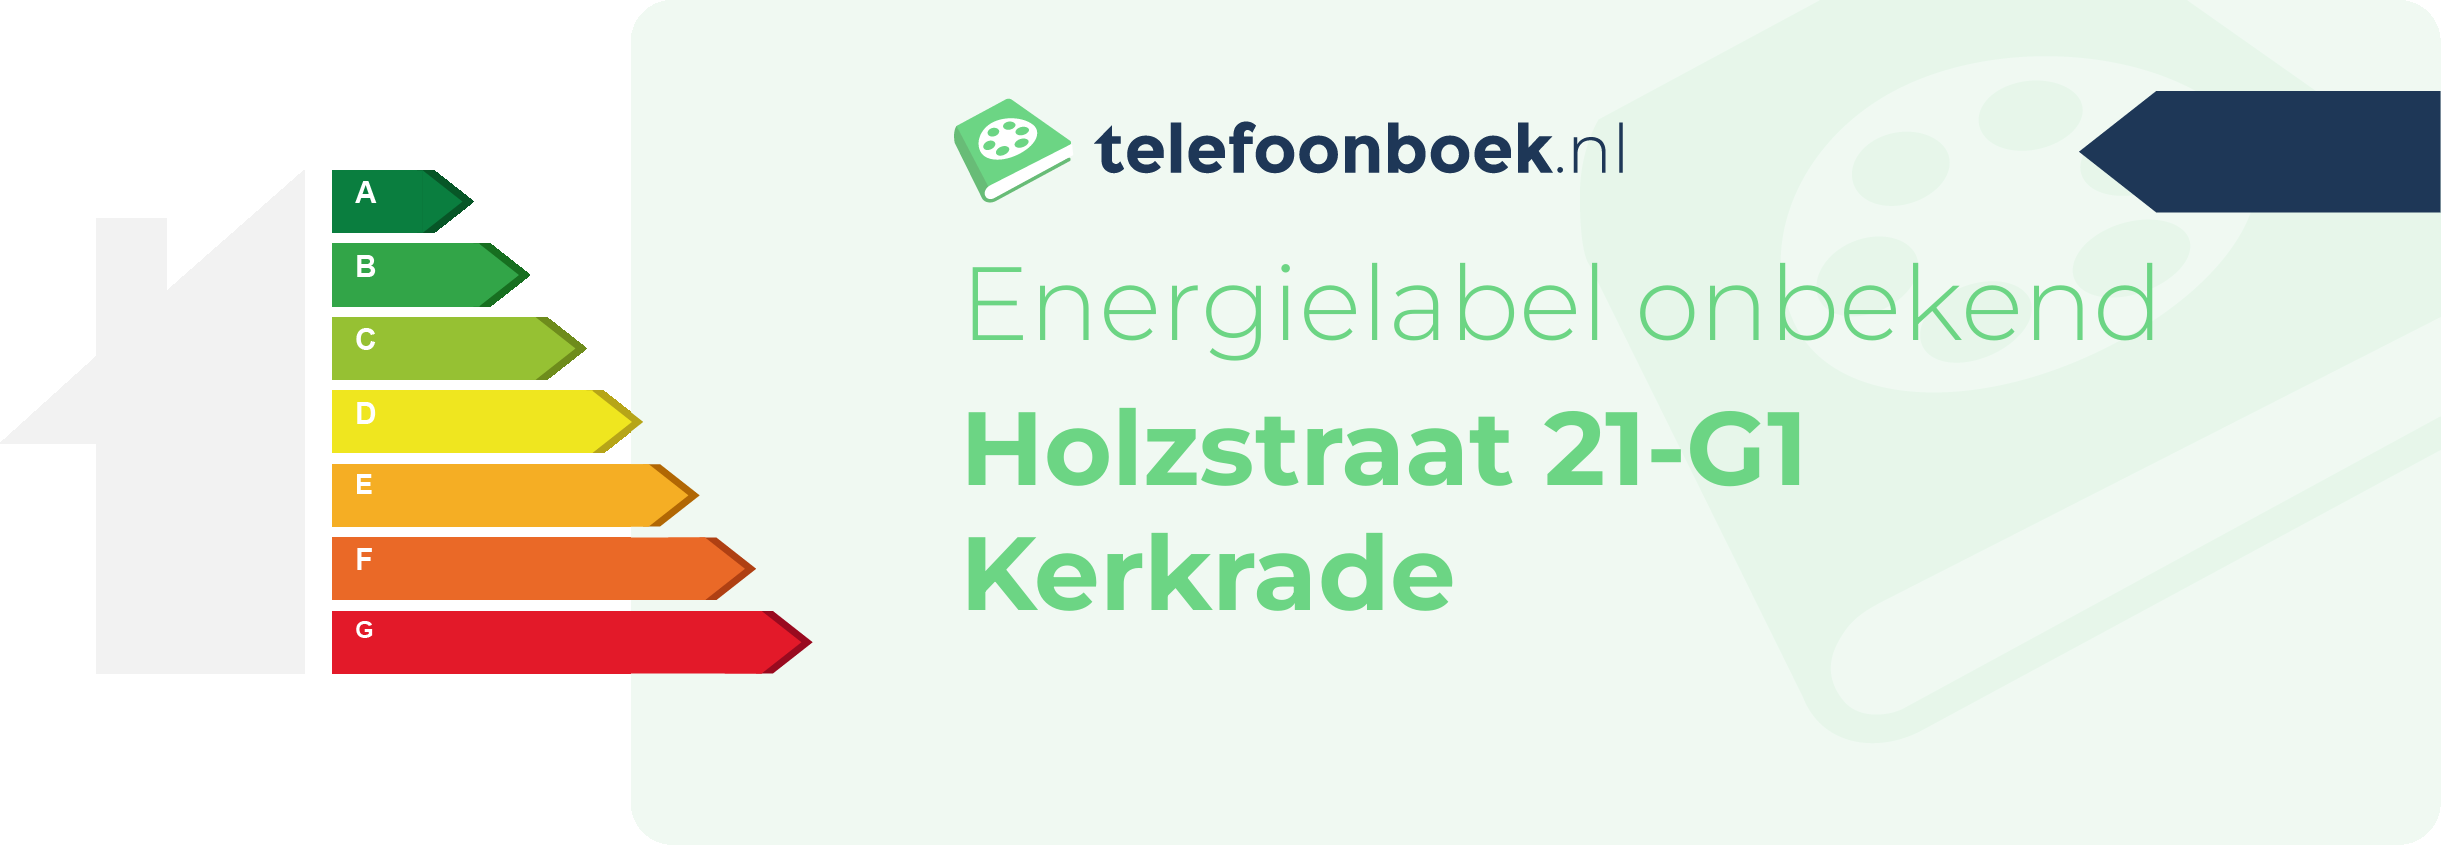 Energielabel Holzstraat 21-G1 Kerkrade